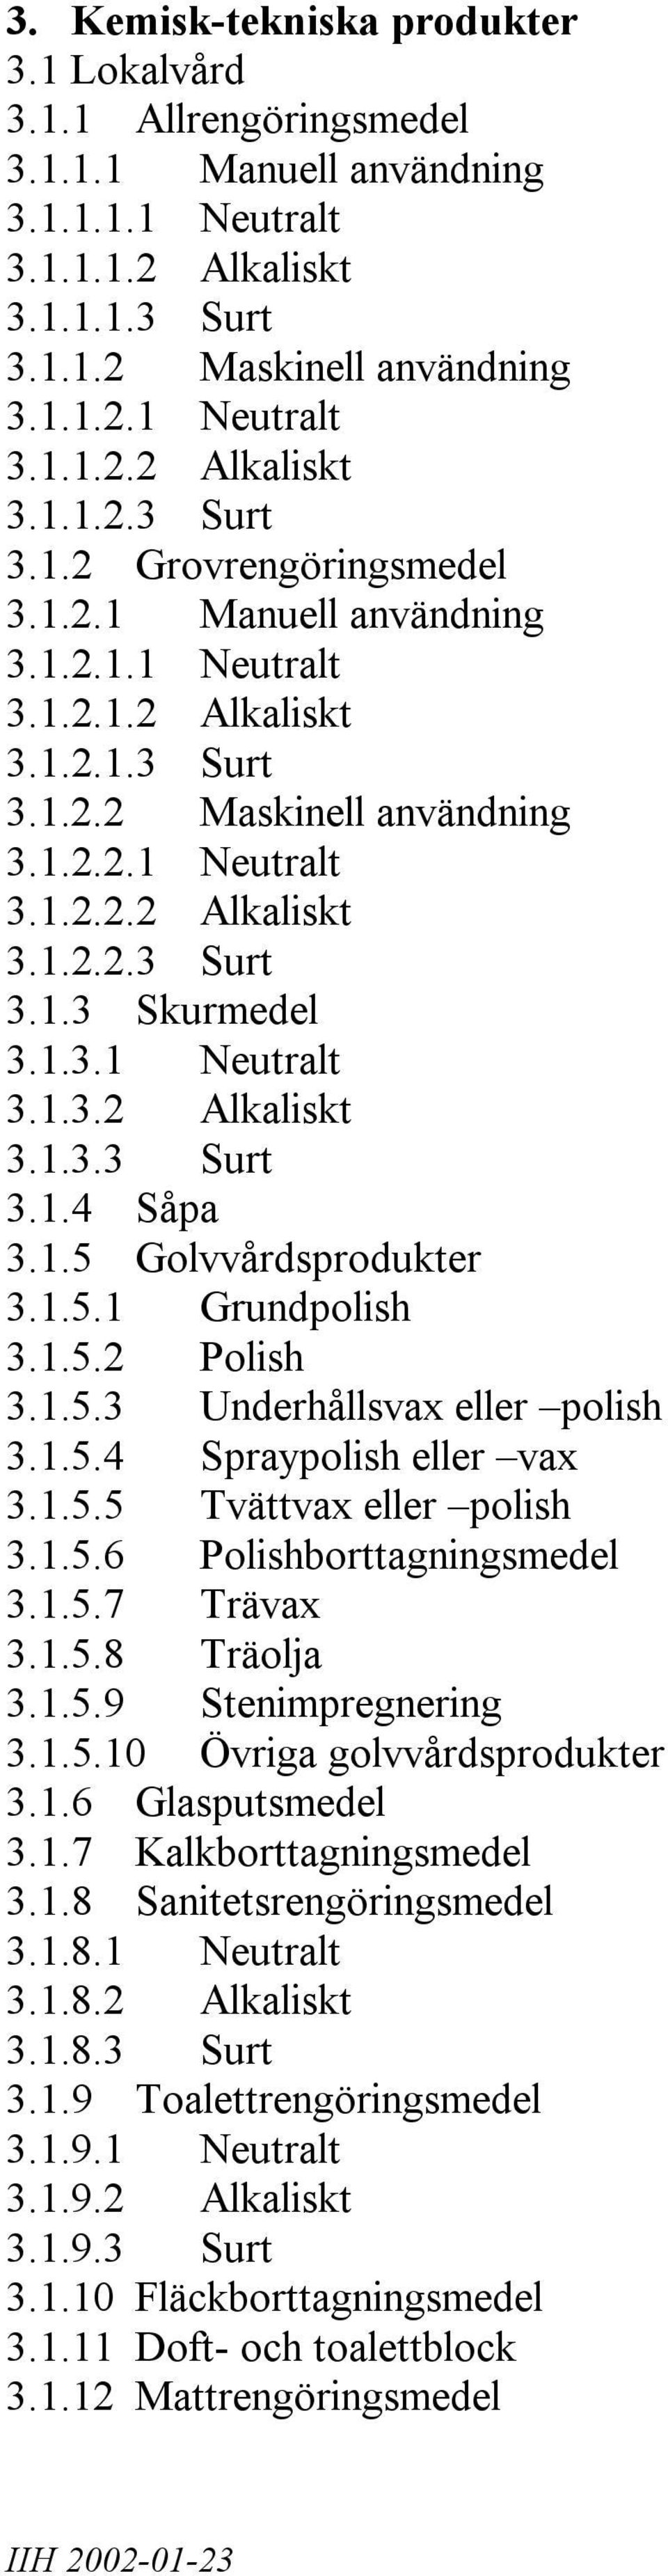 1.5 Golvvårdsprodukter 3.1.5.1 Grundpolish 3.1.5.2 Polish 3.1.5.3 Underhållsvax eller polish 3.1.5.4 Spraypolish eller vax 3.1.5.5 Tvättvax eller polish 3.1.5.6 Polishborttagningsmedel 3.1.5.7 Trävax 3.